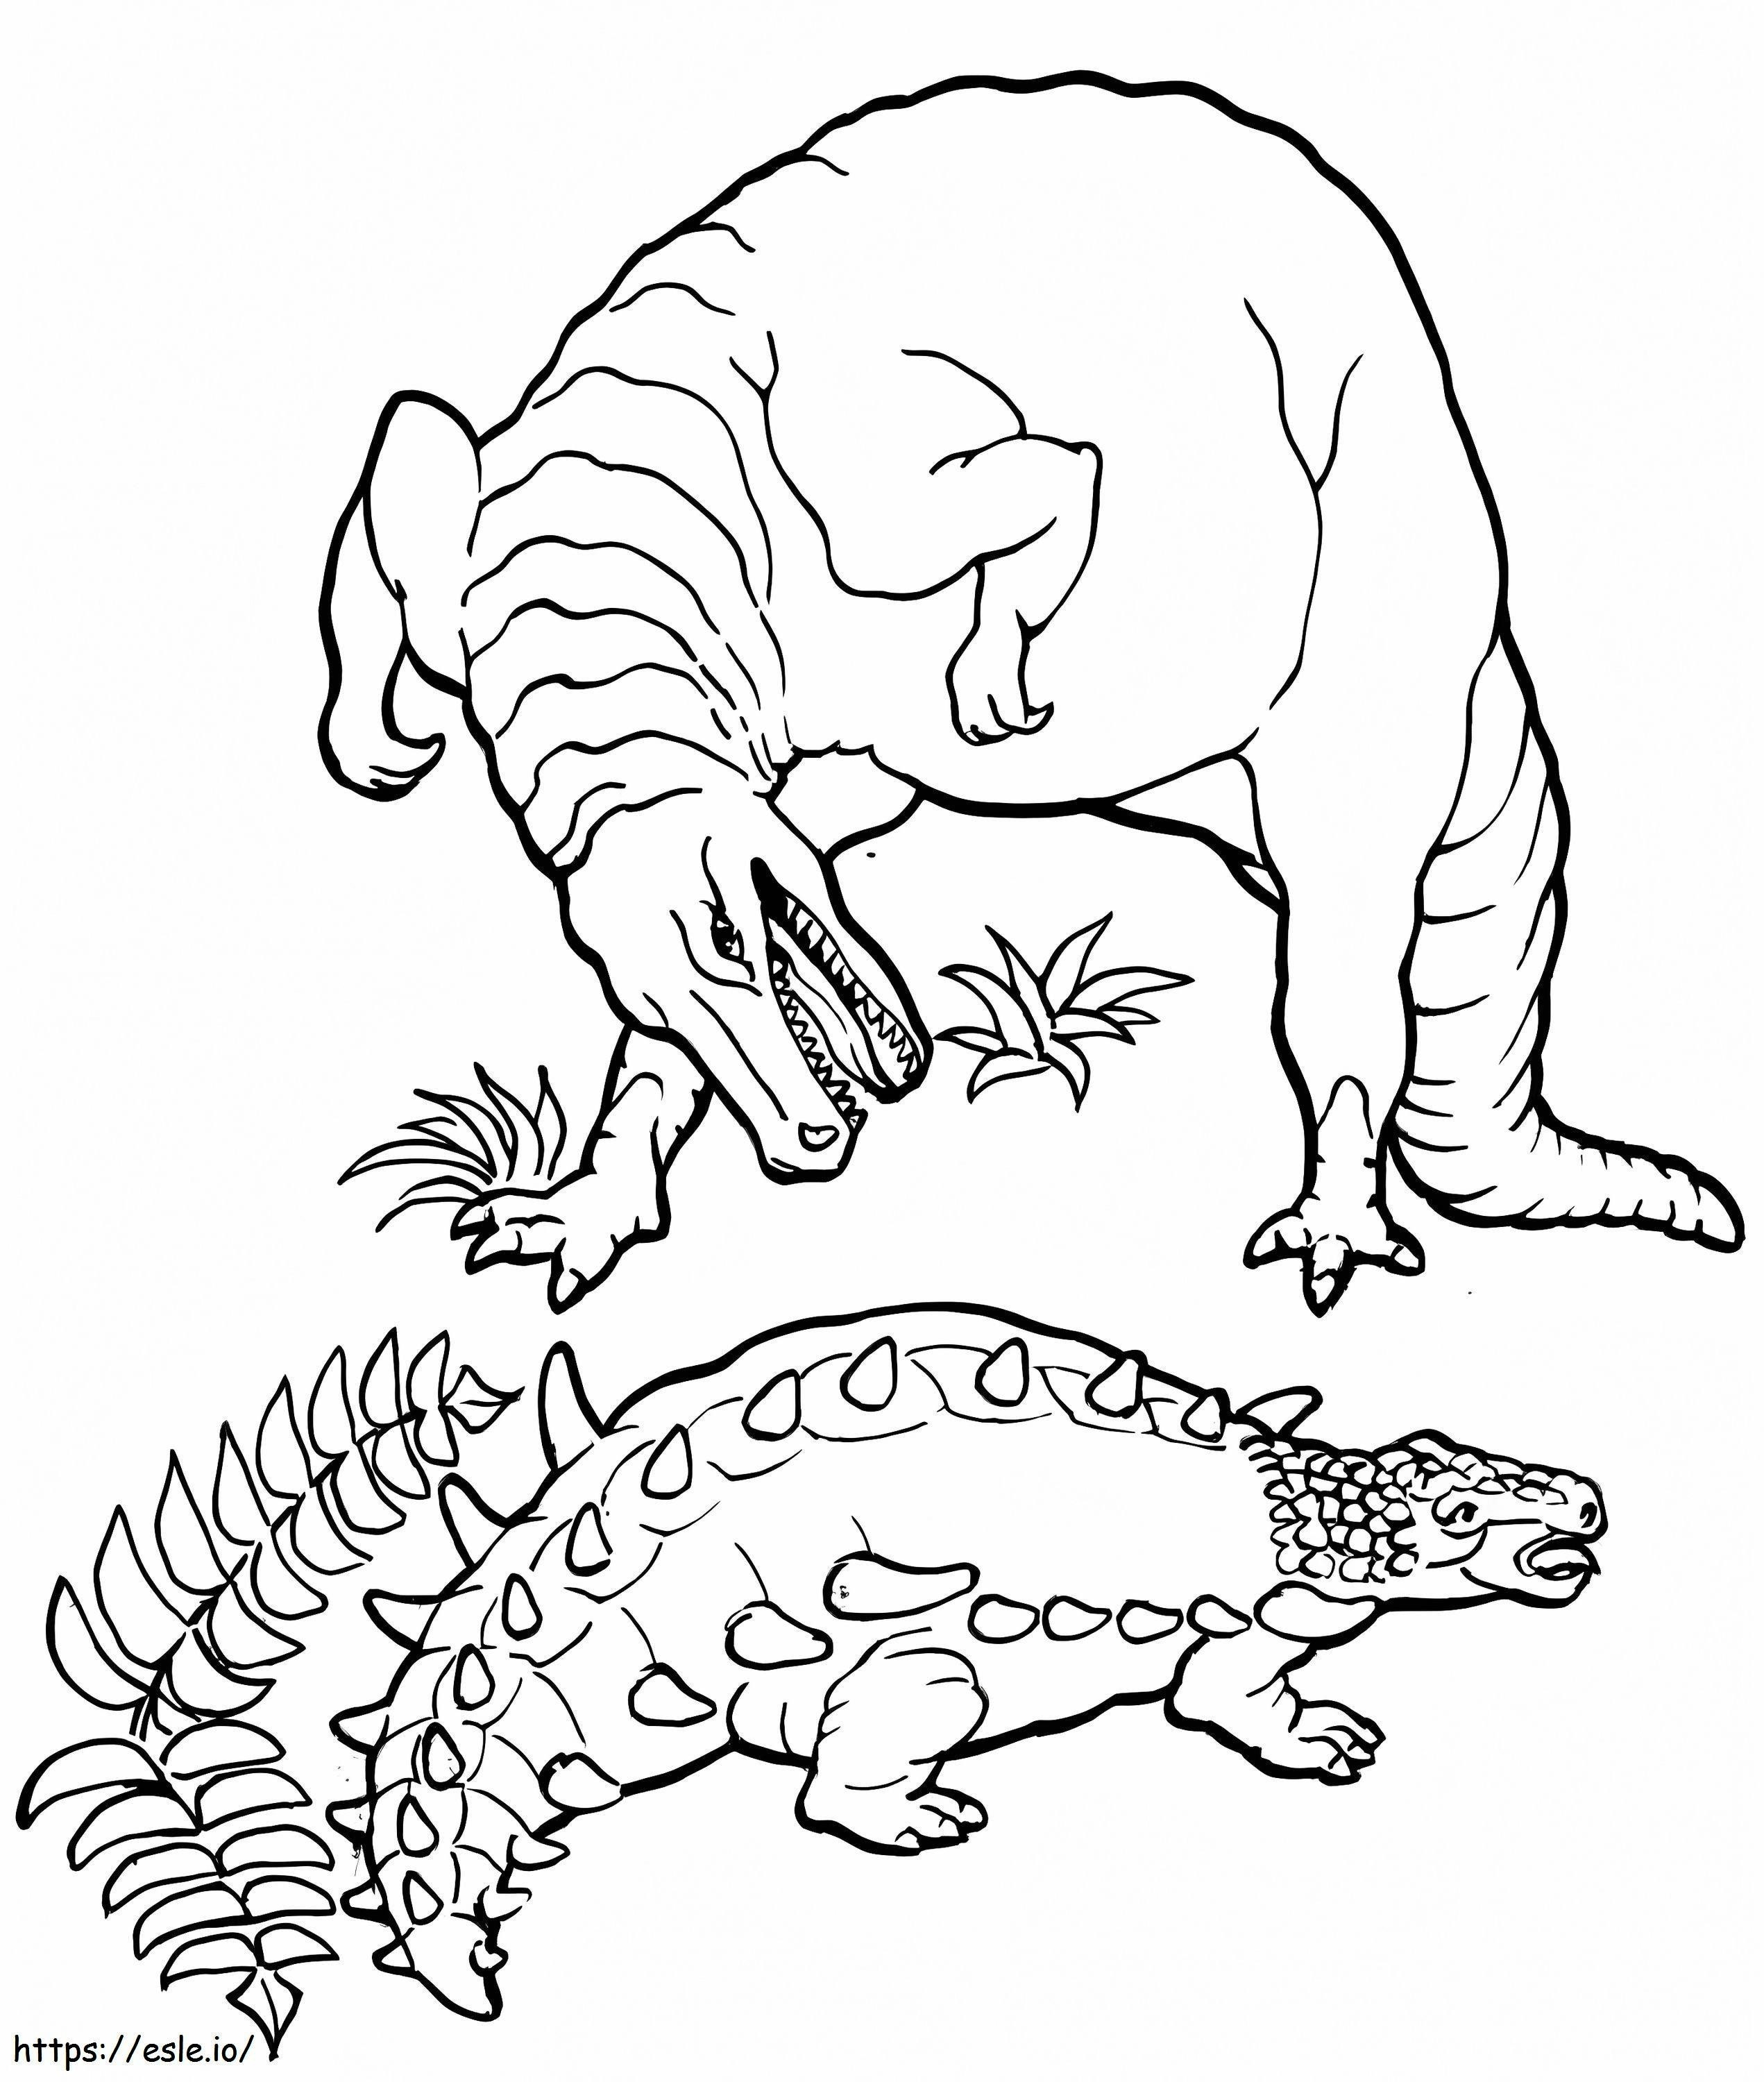 Ankylosaurus und T-Rex ausmalbilder